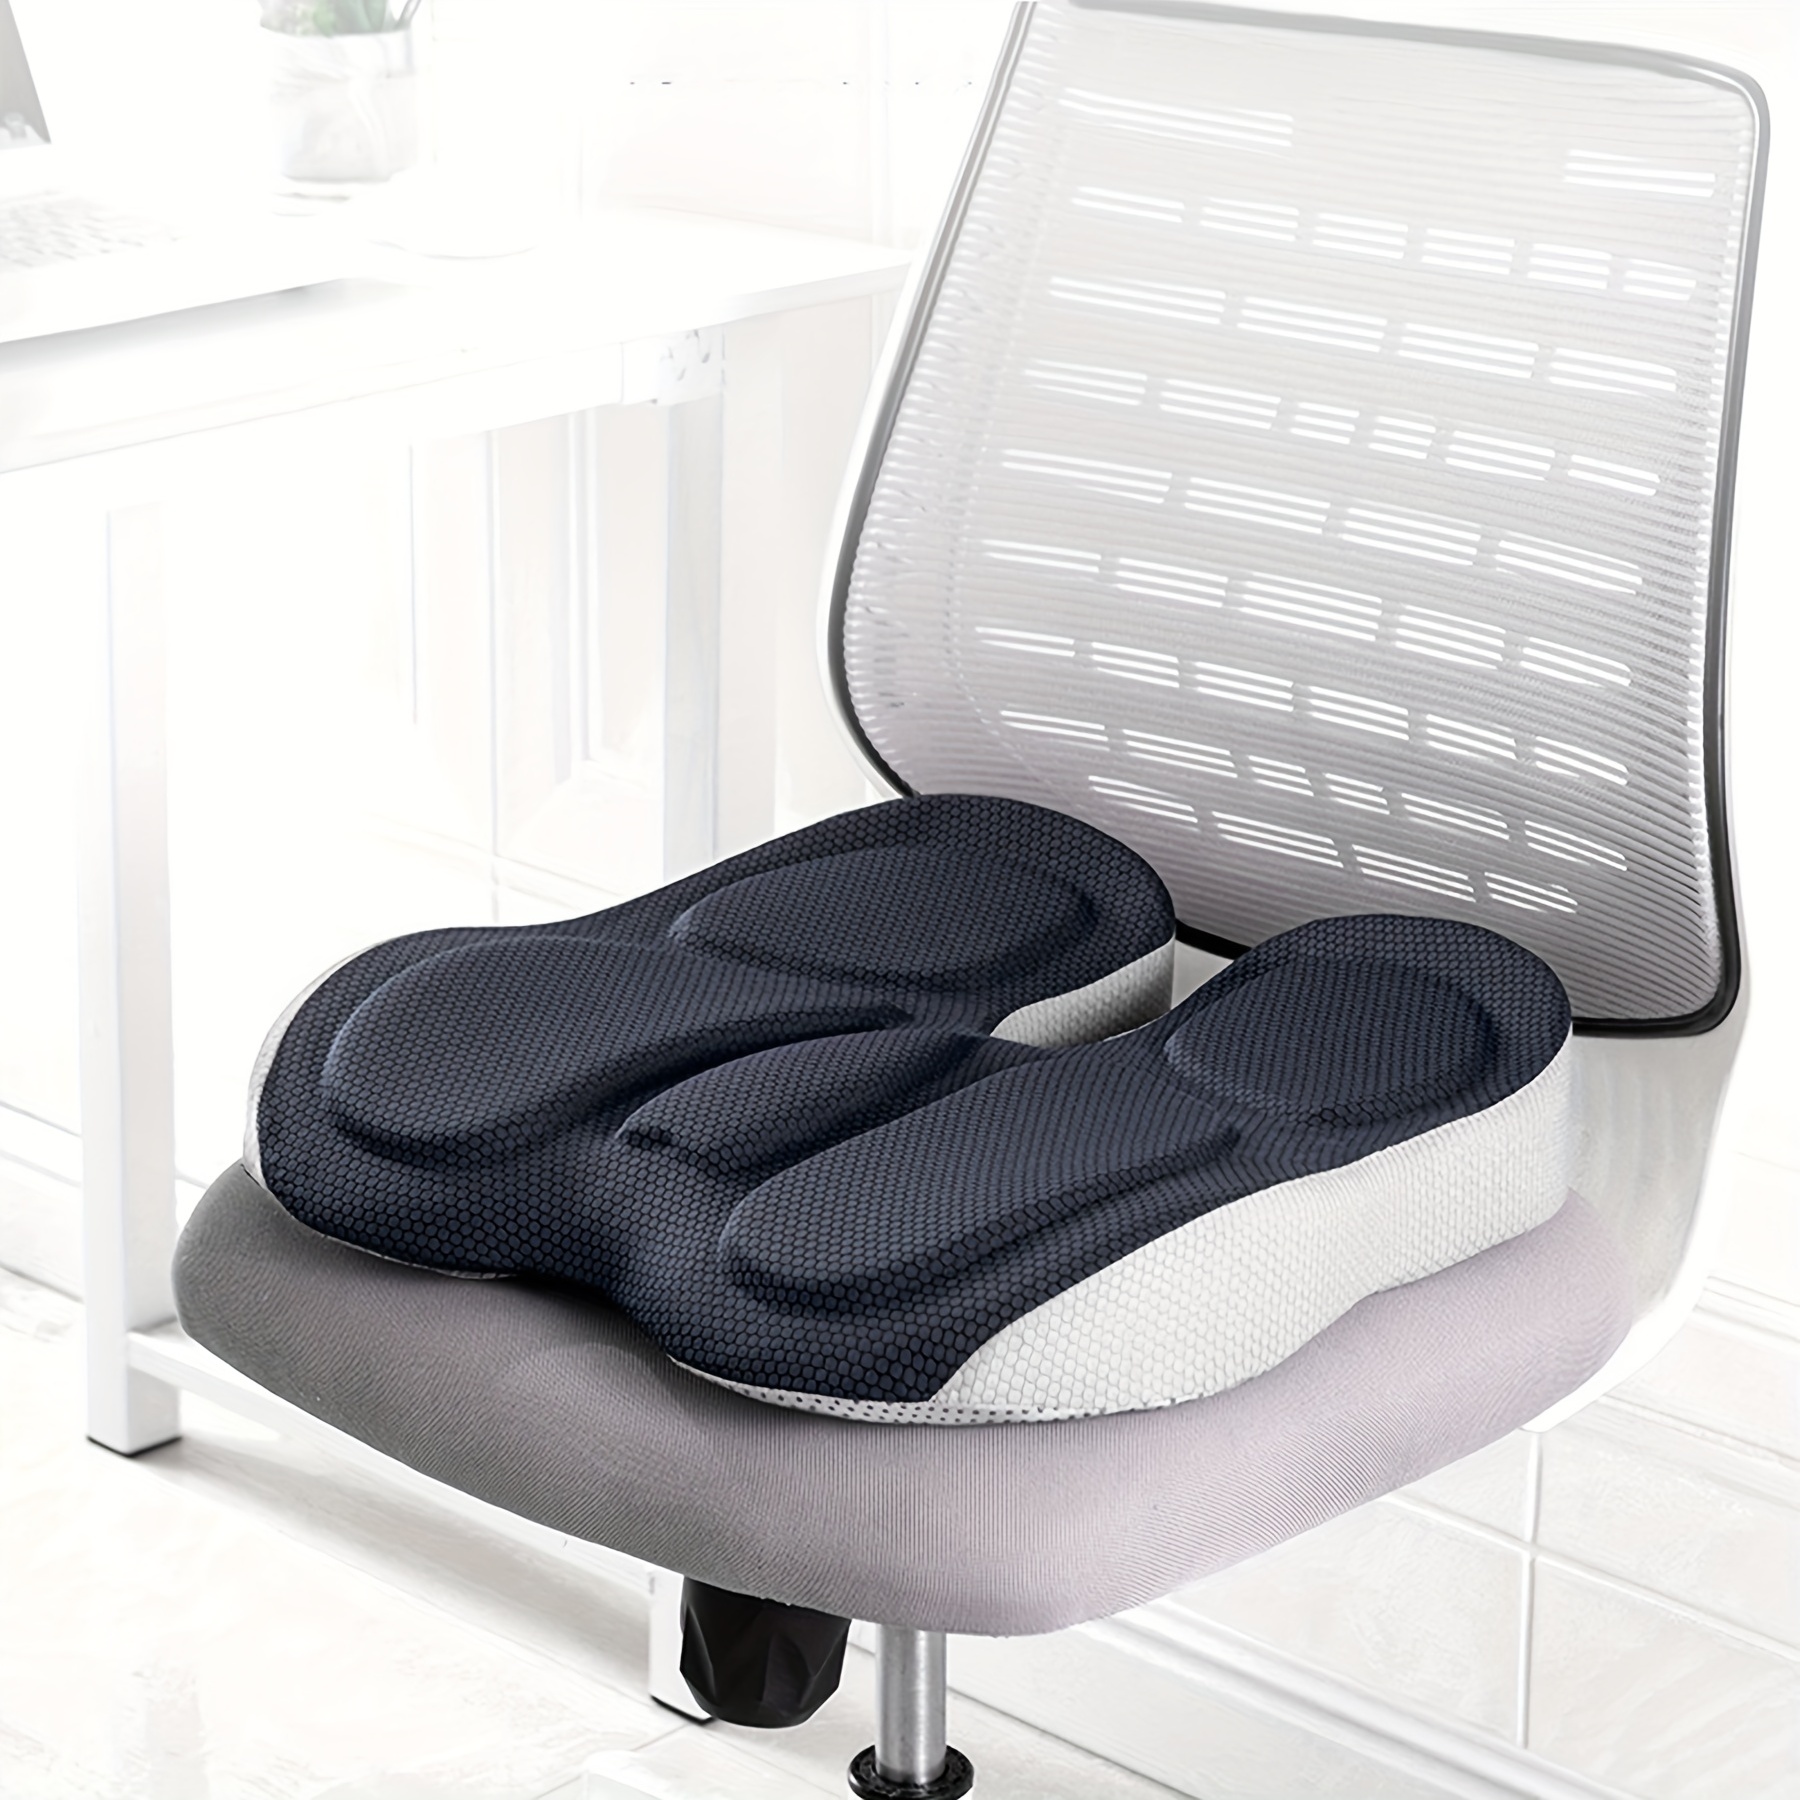 HOMCA Donut Pillow Hemorrhoid Seat Cushion for Office Chair, Premium Memory  Foam Chair Cushion, Sciatica Pillow for Sitting Tailbone Pain Car Seat